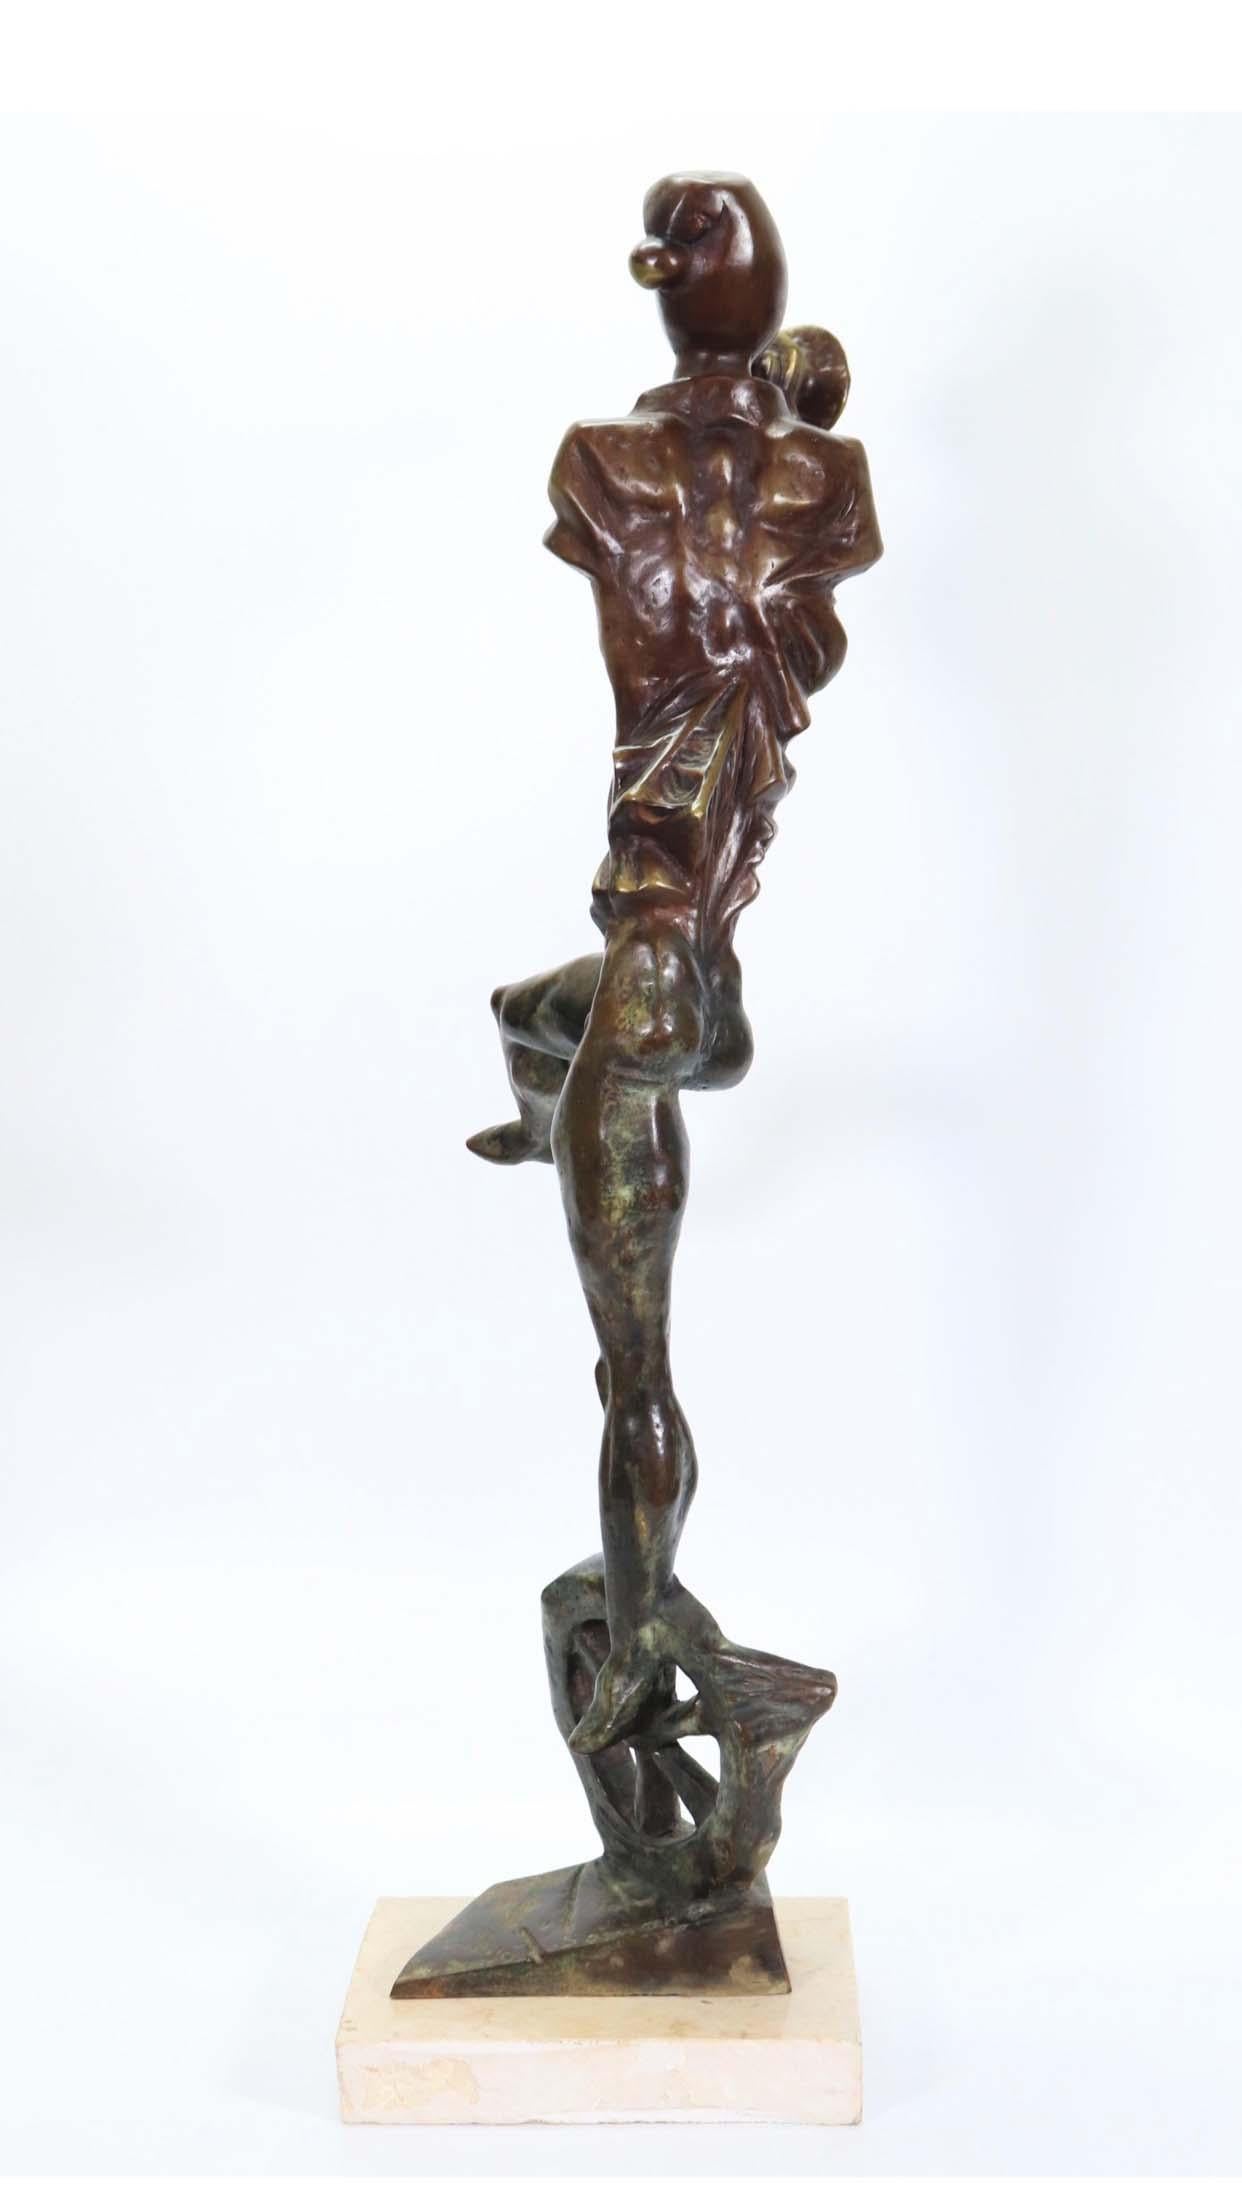 Joueur de corne de bœuf - Sculpture de SEMION RABINKOV